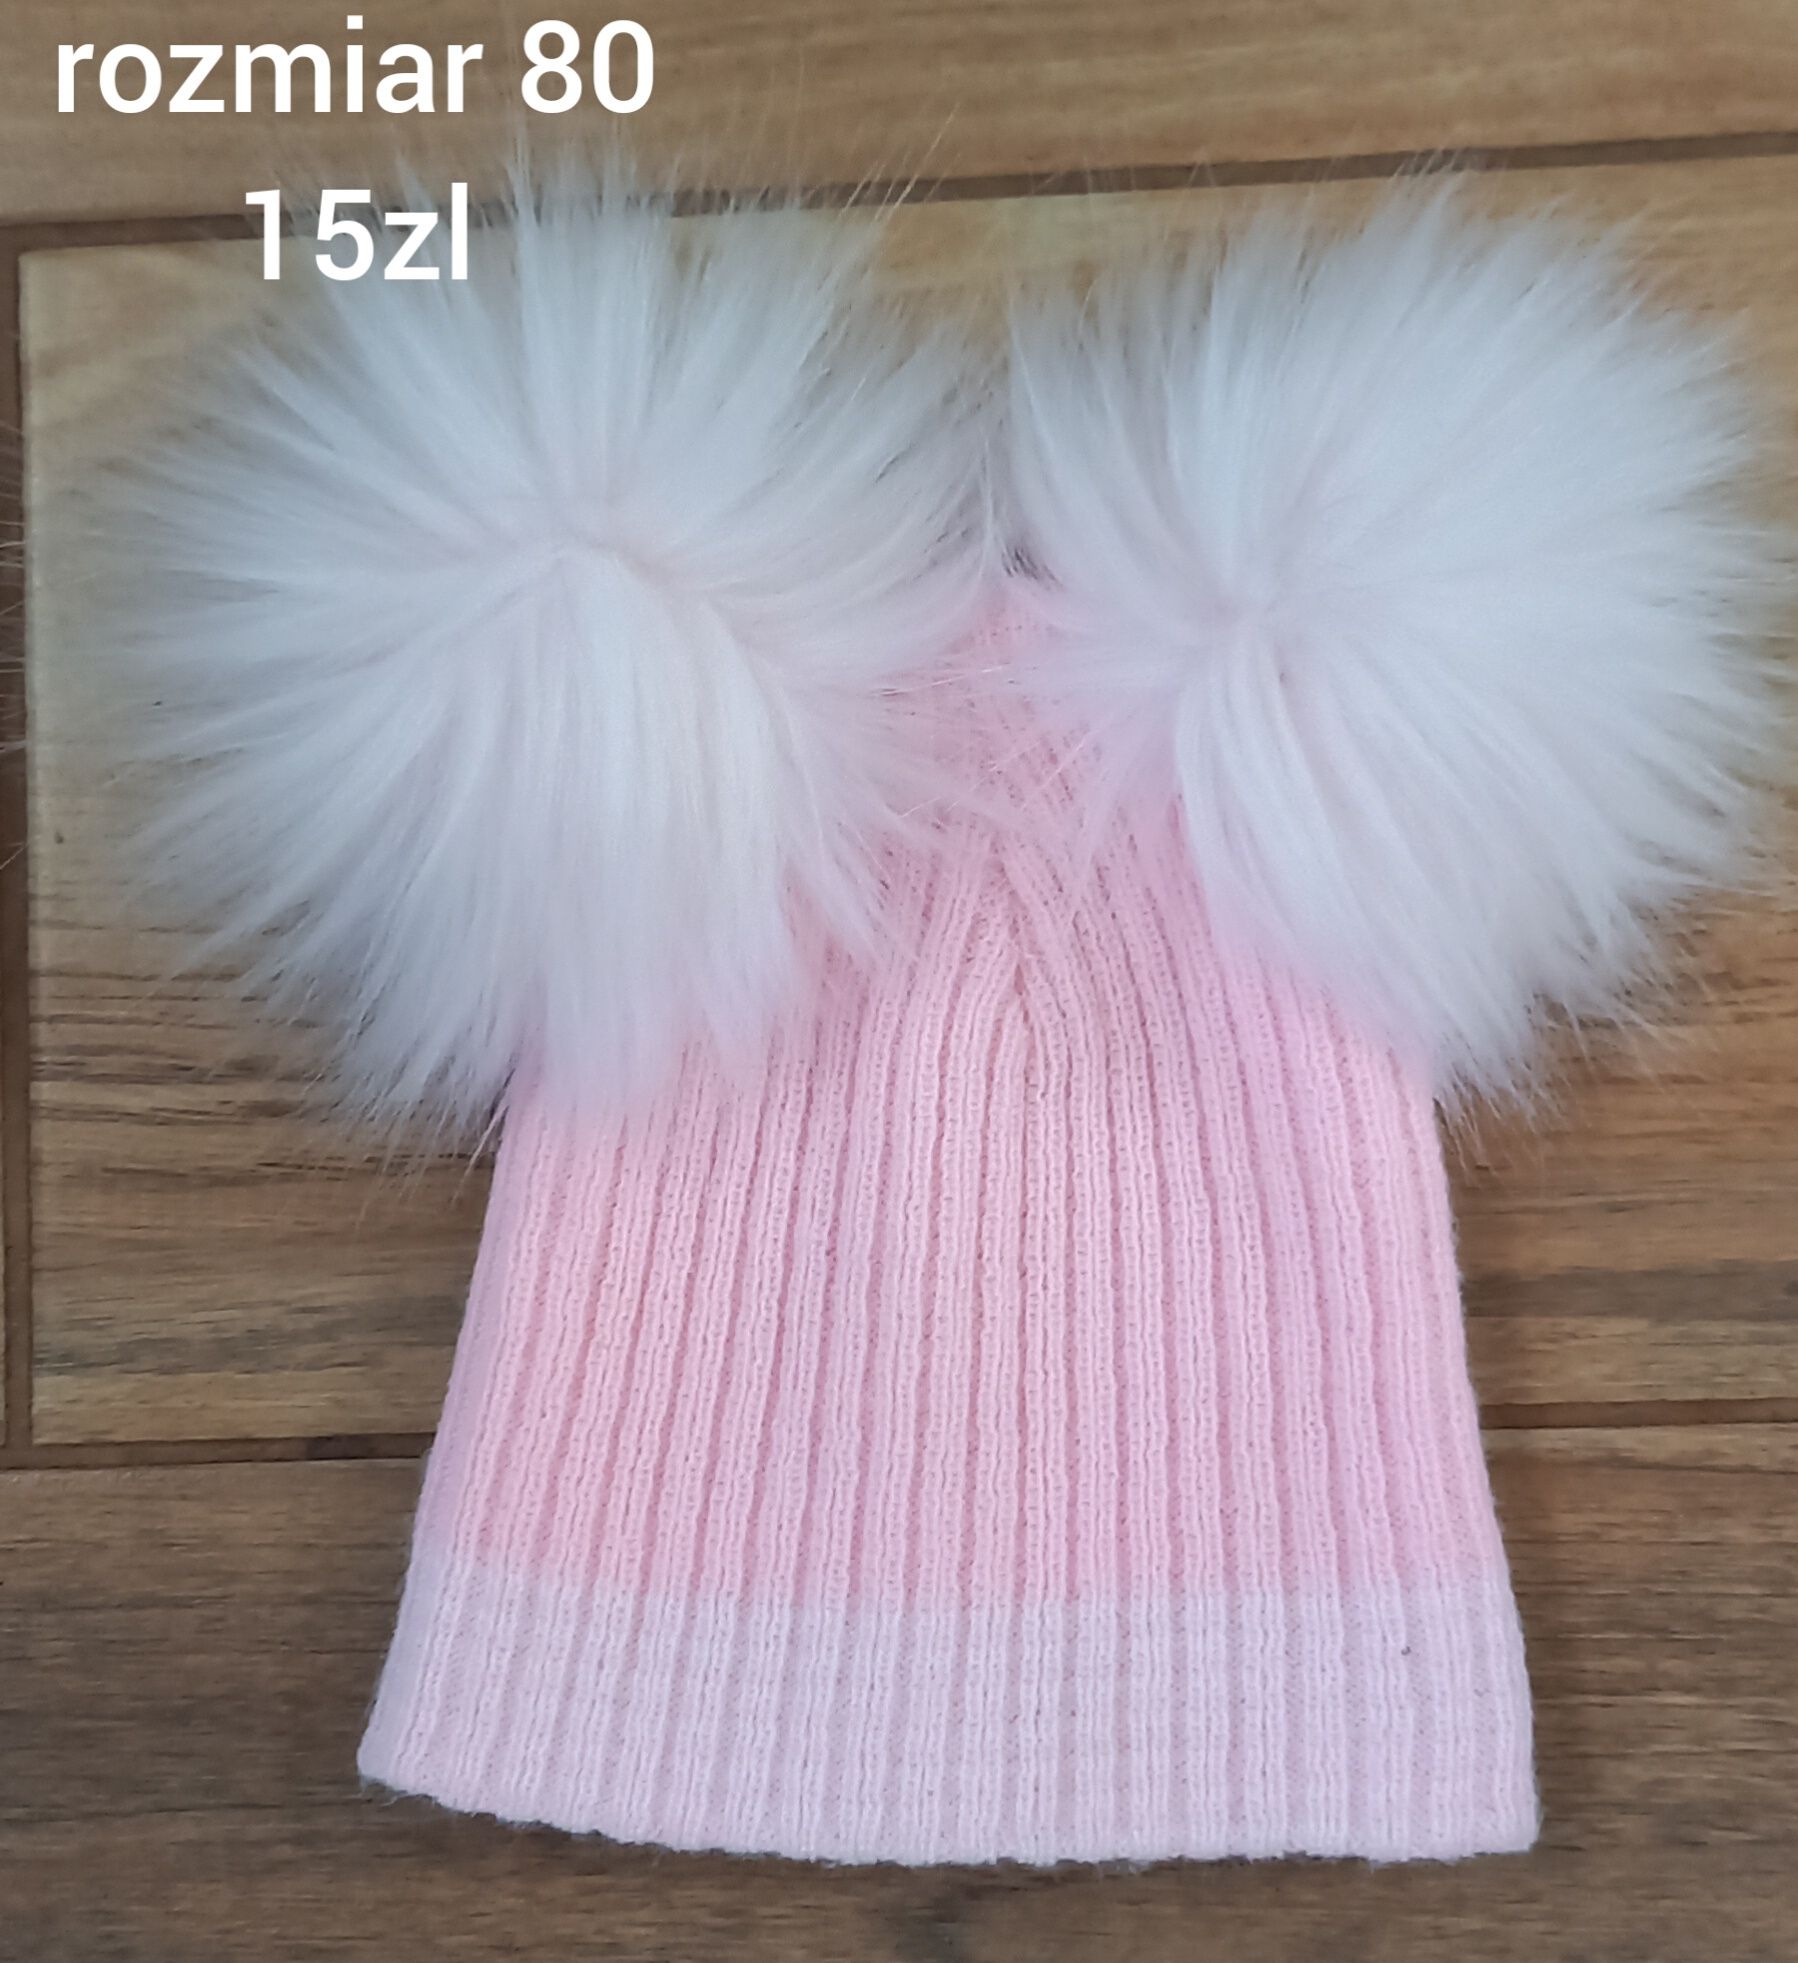 Śliczna czapka dla dziewczynki